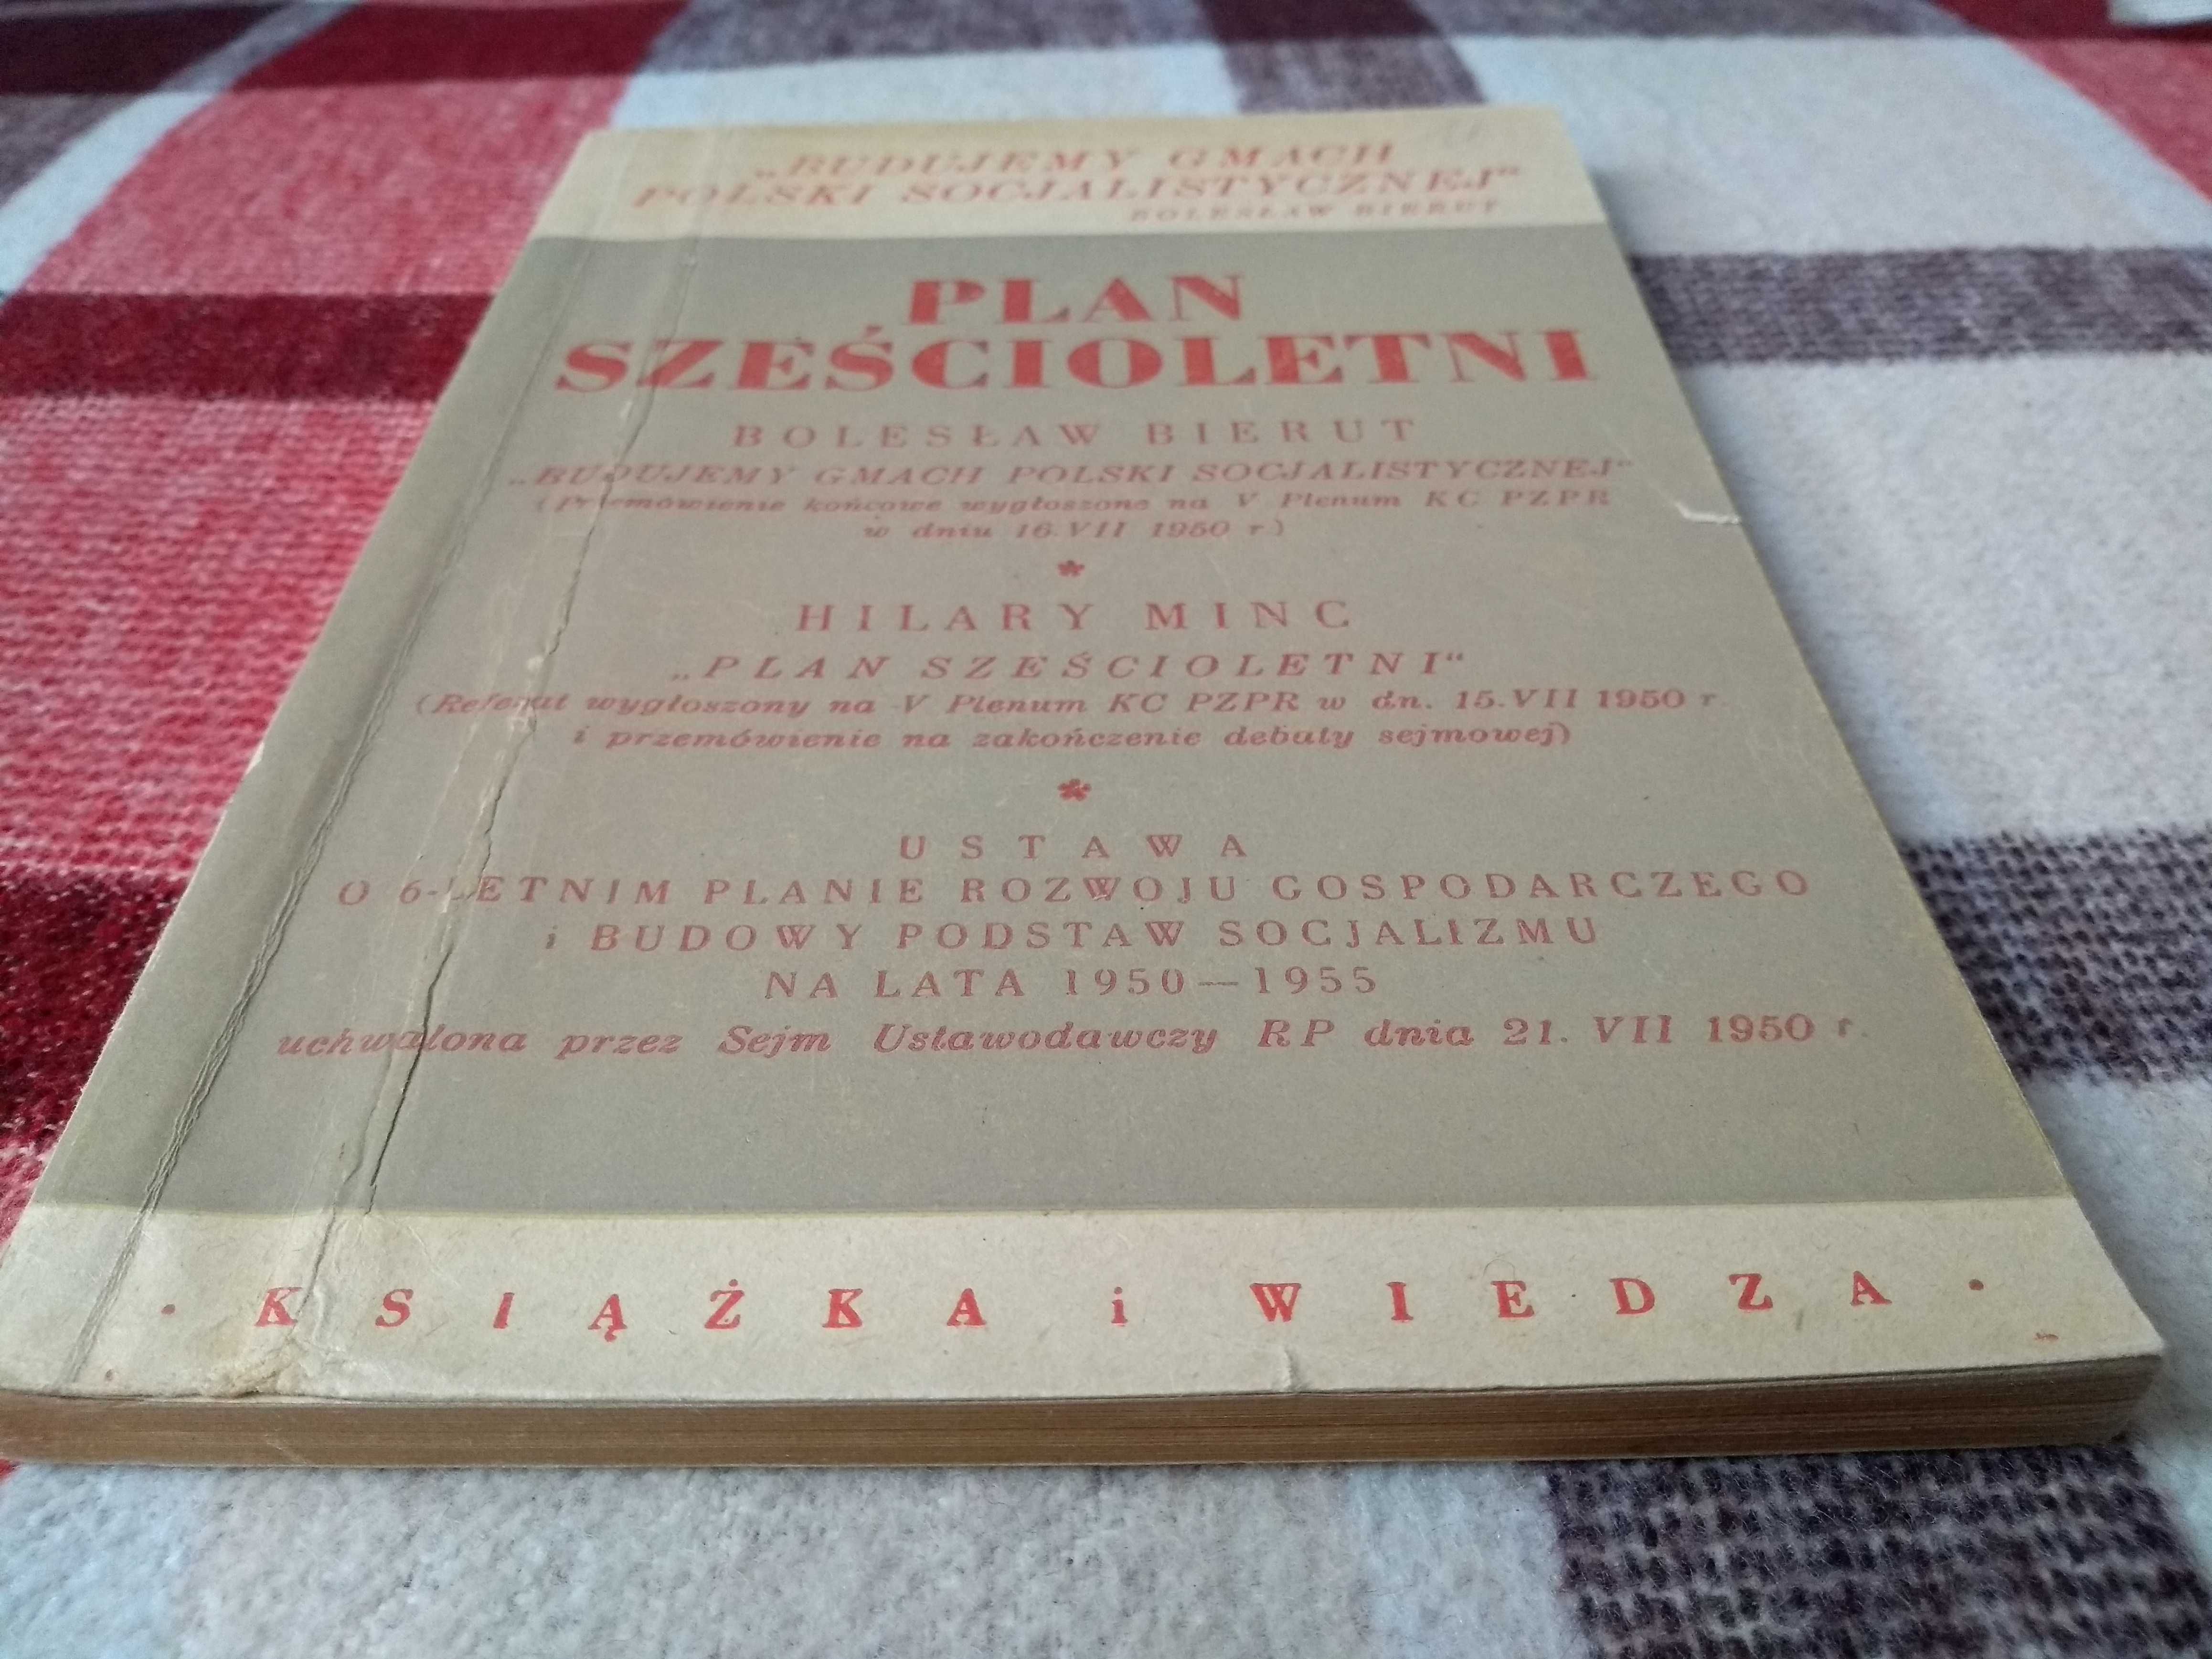 Bolesław Bierut Plan Sześcioletni, 1950 rok, książka retro PRL